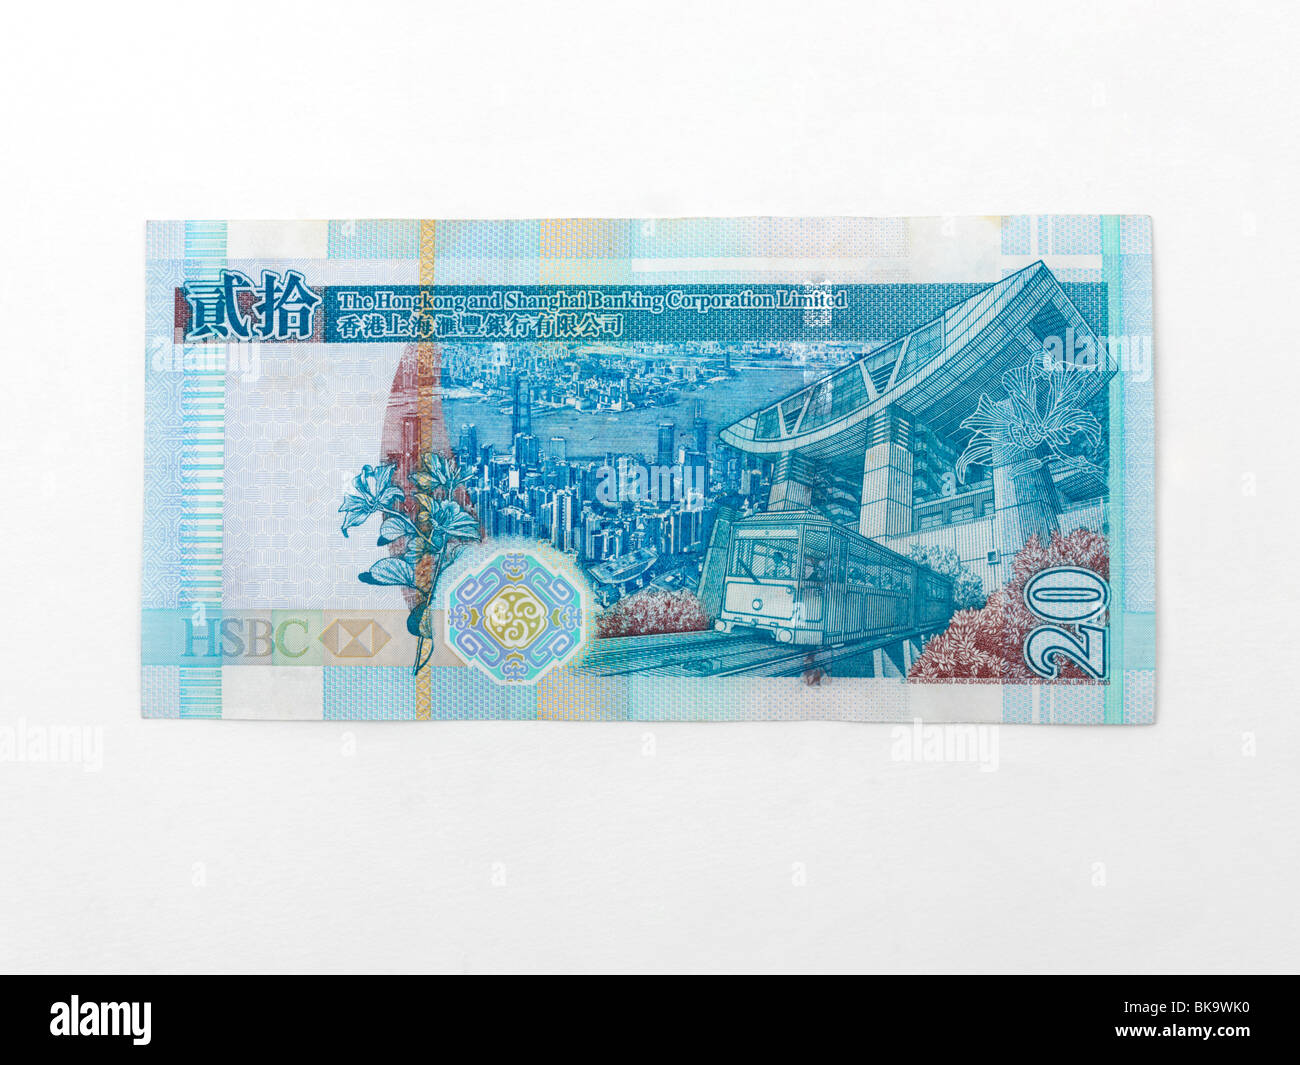 Hong Kong 20 Dollar Note Banknote Issued Hong Kong Shanghai Banking Corporation (HSBC) Stock Photo